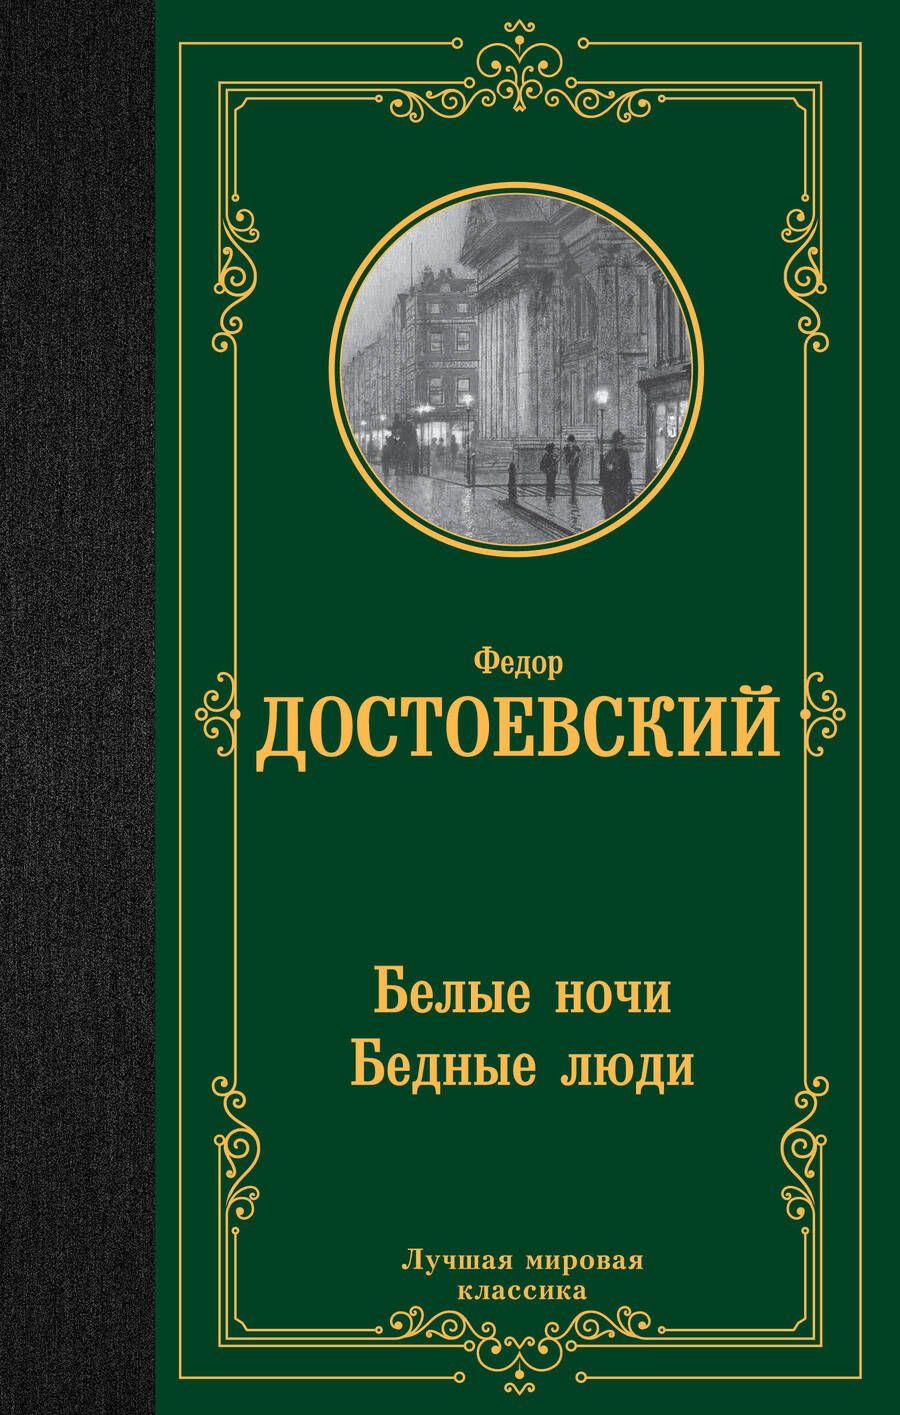 Обложка книги "Достоевский: Белые ночи. Бедные люди"